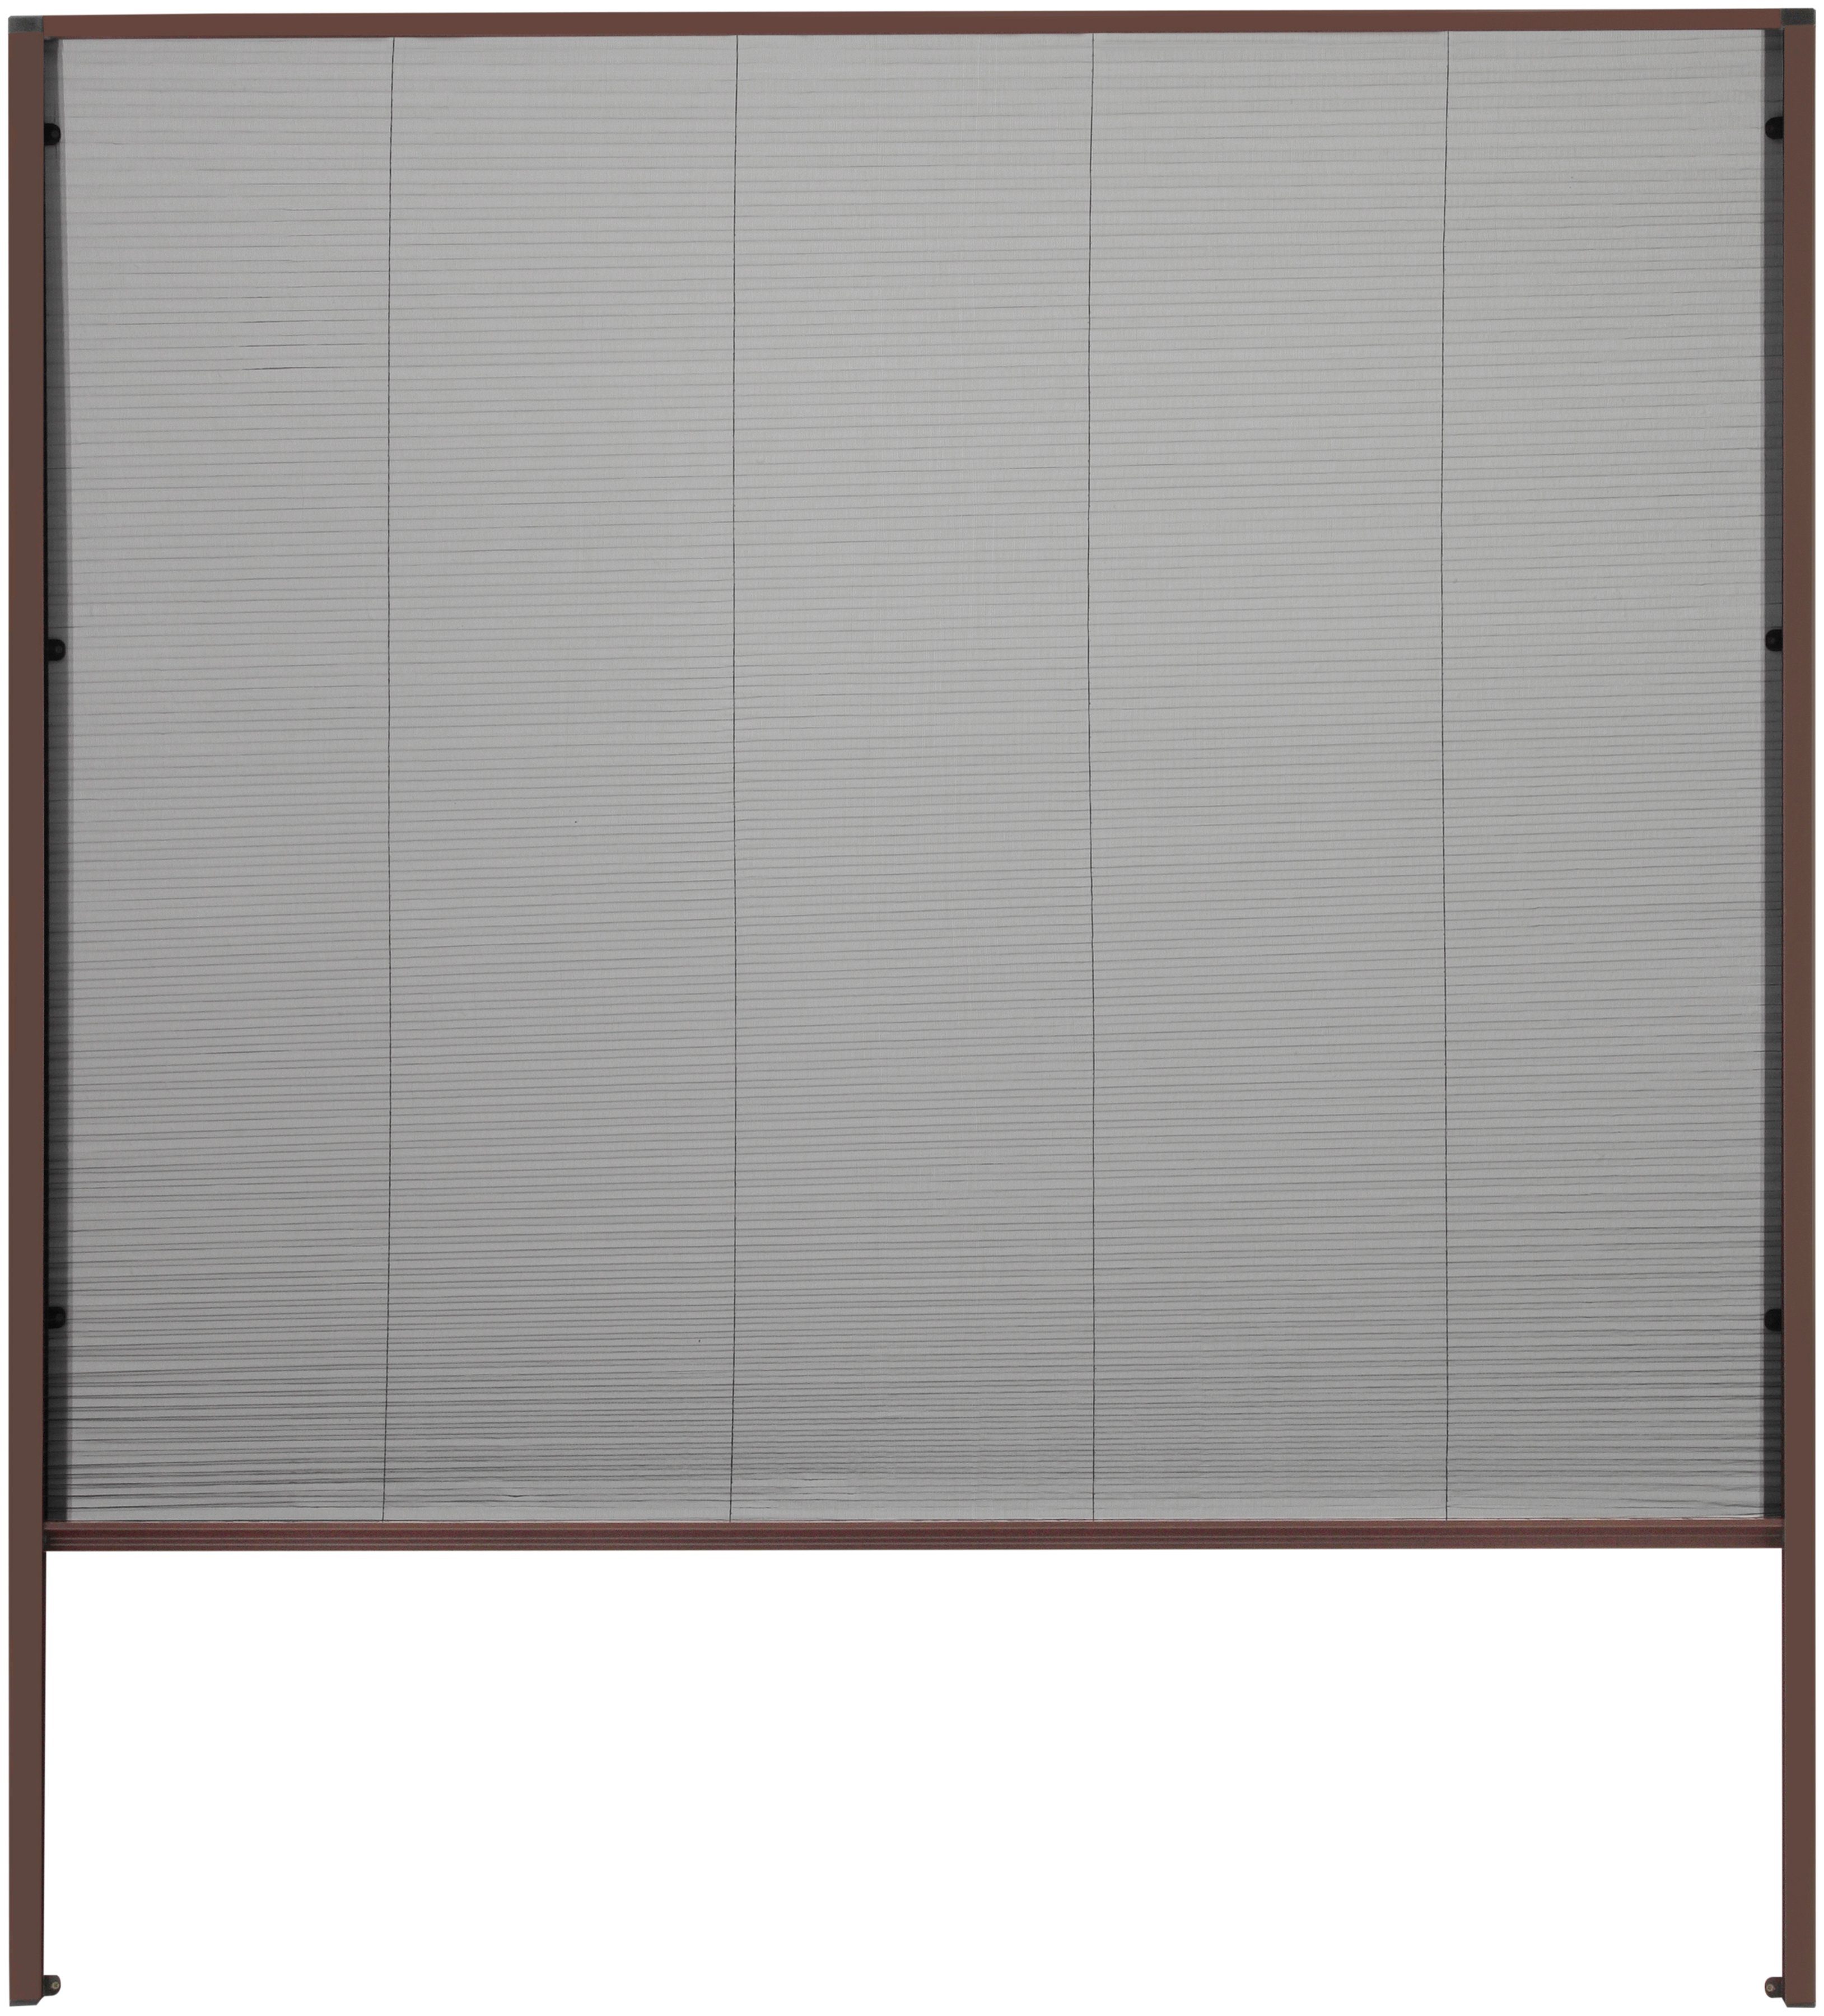 Insektenschutzrollo für Dachfenster, hecht international, transparent, verschraubt, braun/schwarz, BxH: 160x180 cm